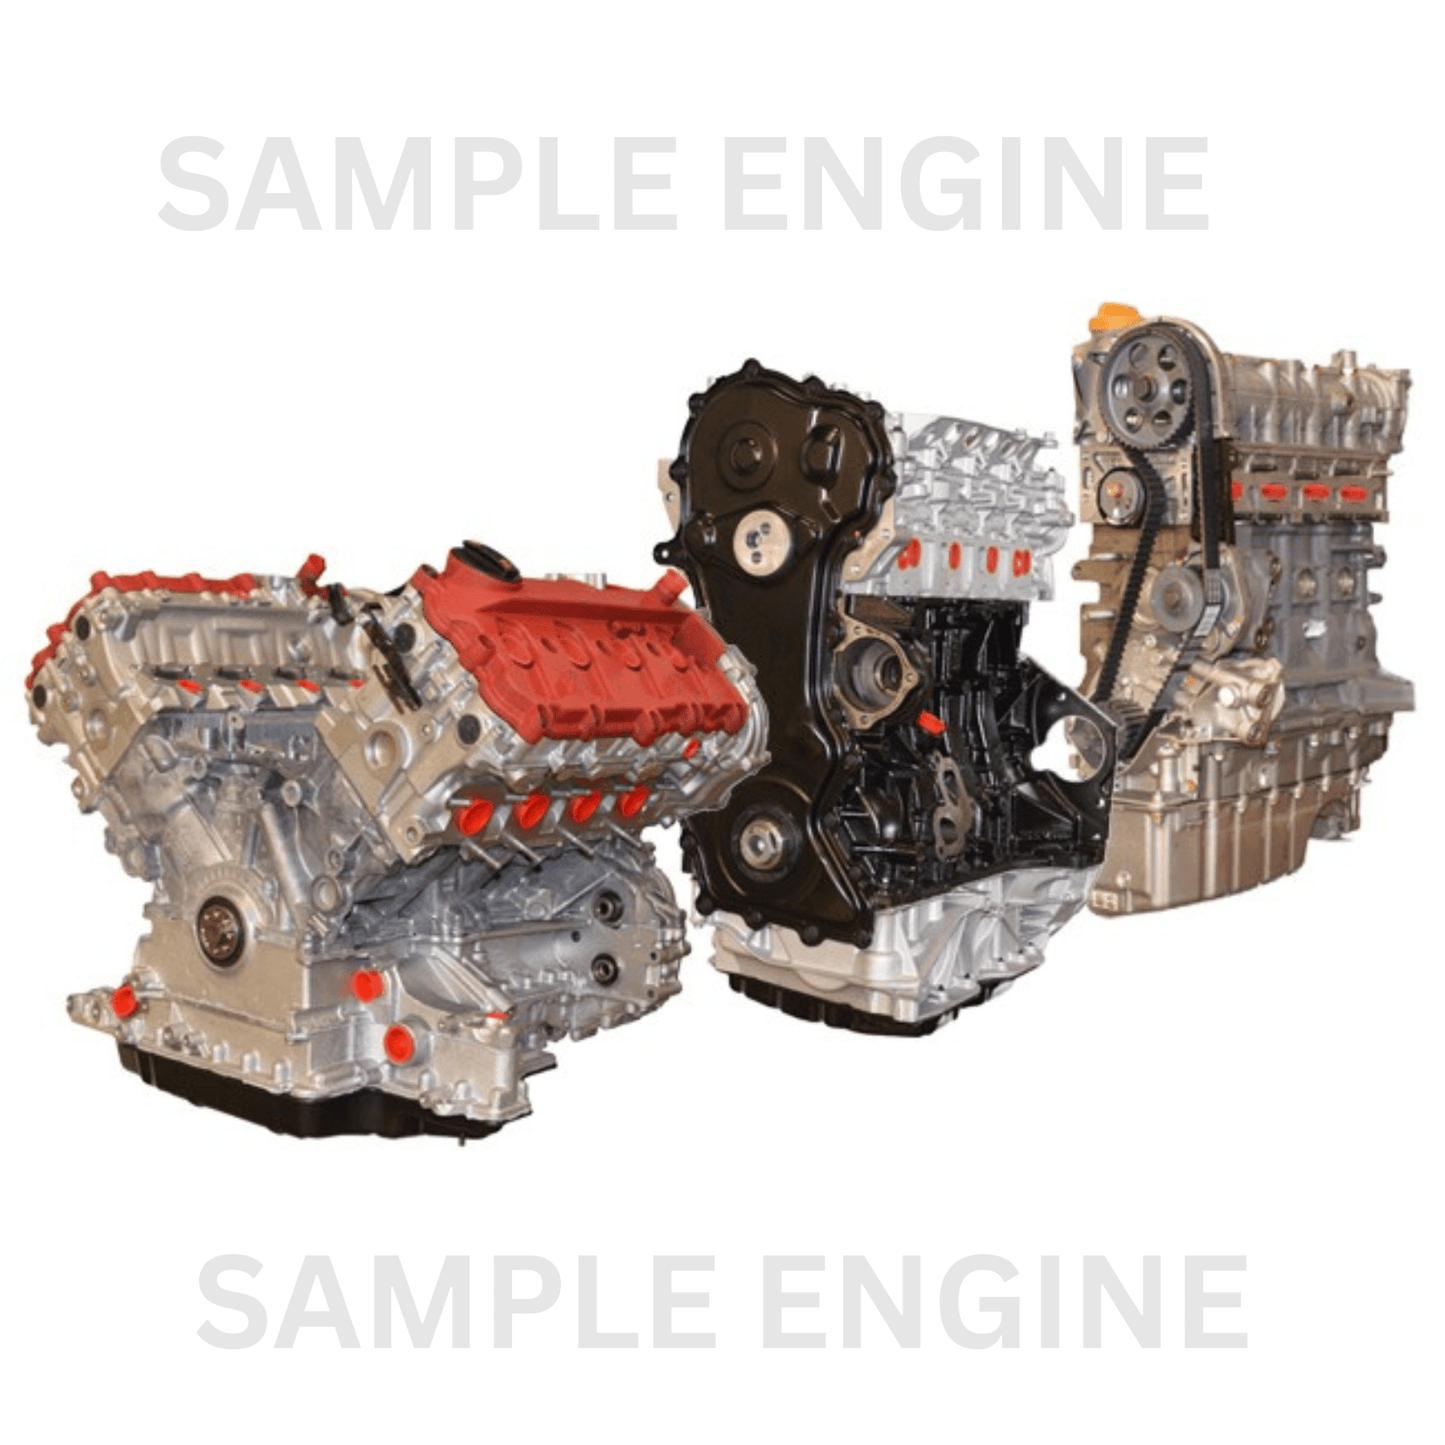 VOLKSWAGEN TRANSPORTER CXHA 2.0L Diesel 4 Cylinder Manual Engine - vehiclewise